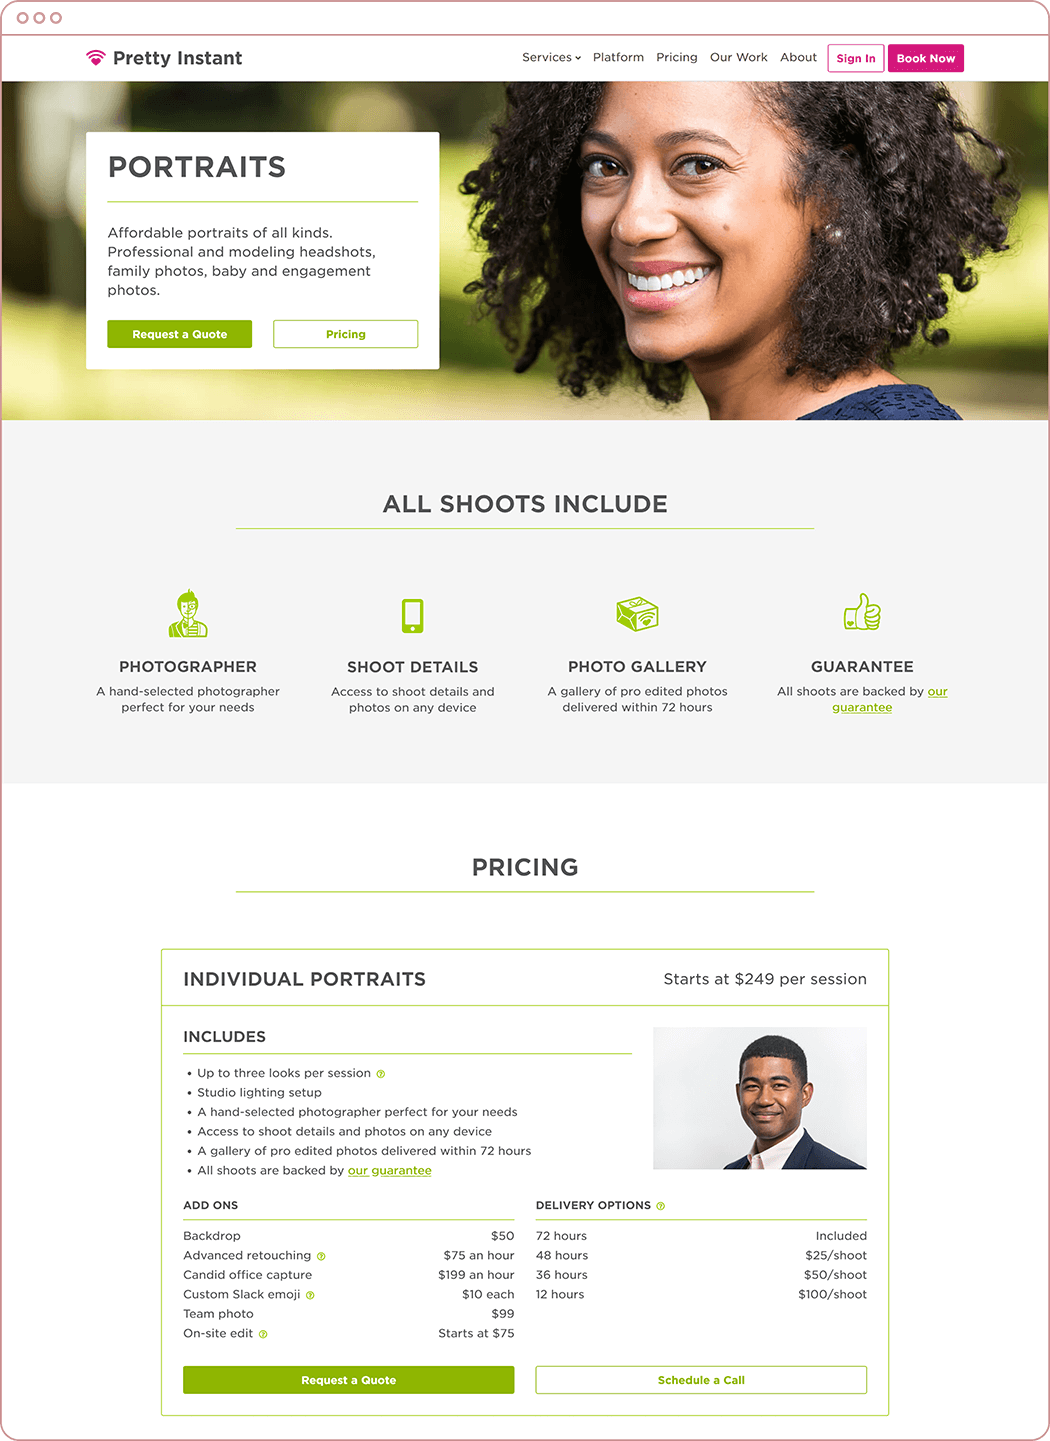 Portrait services page